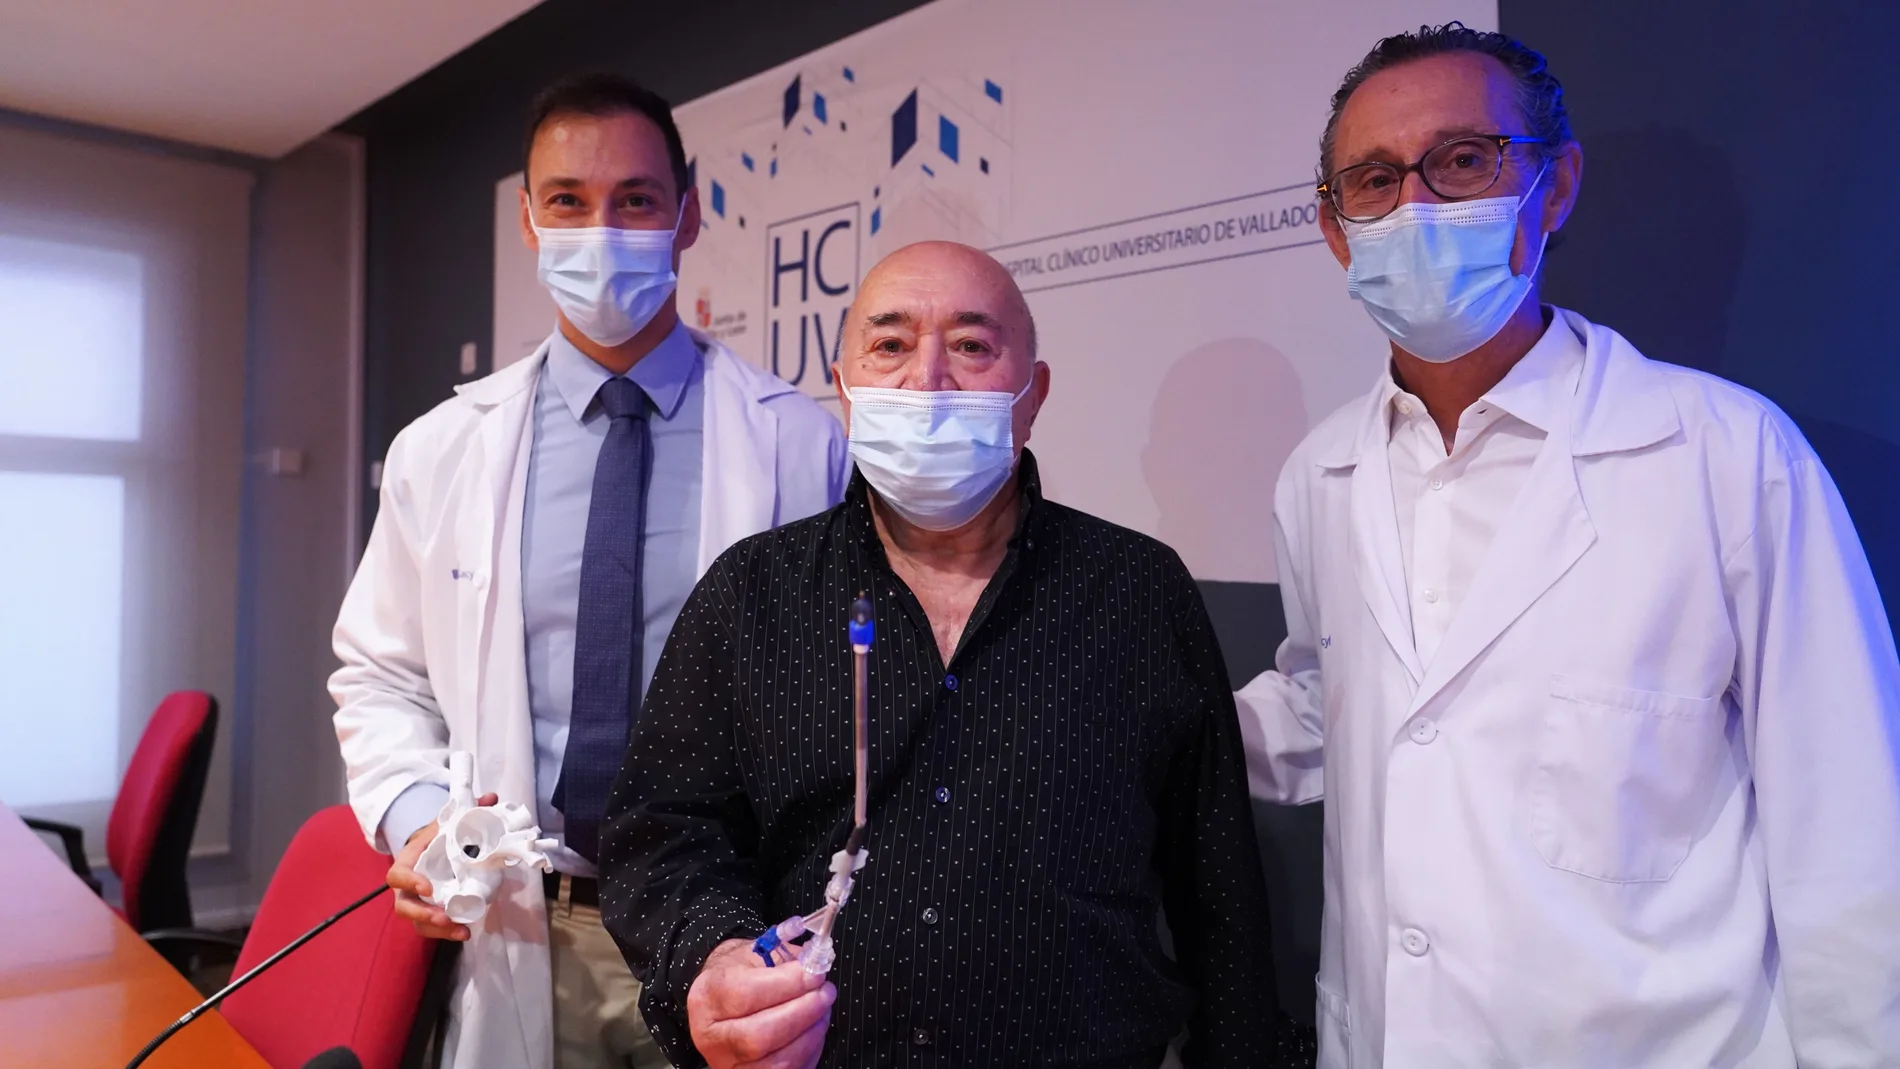 El jefe del Servicio de Cardiología del Hospital Clínico Universitario, Alberto San Román Calvar, informa sobre la reciente implantación en un paciente de un novedoso dispositivo intracavitario